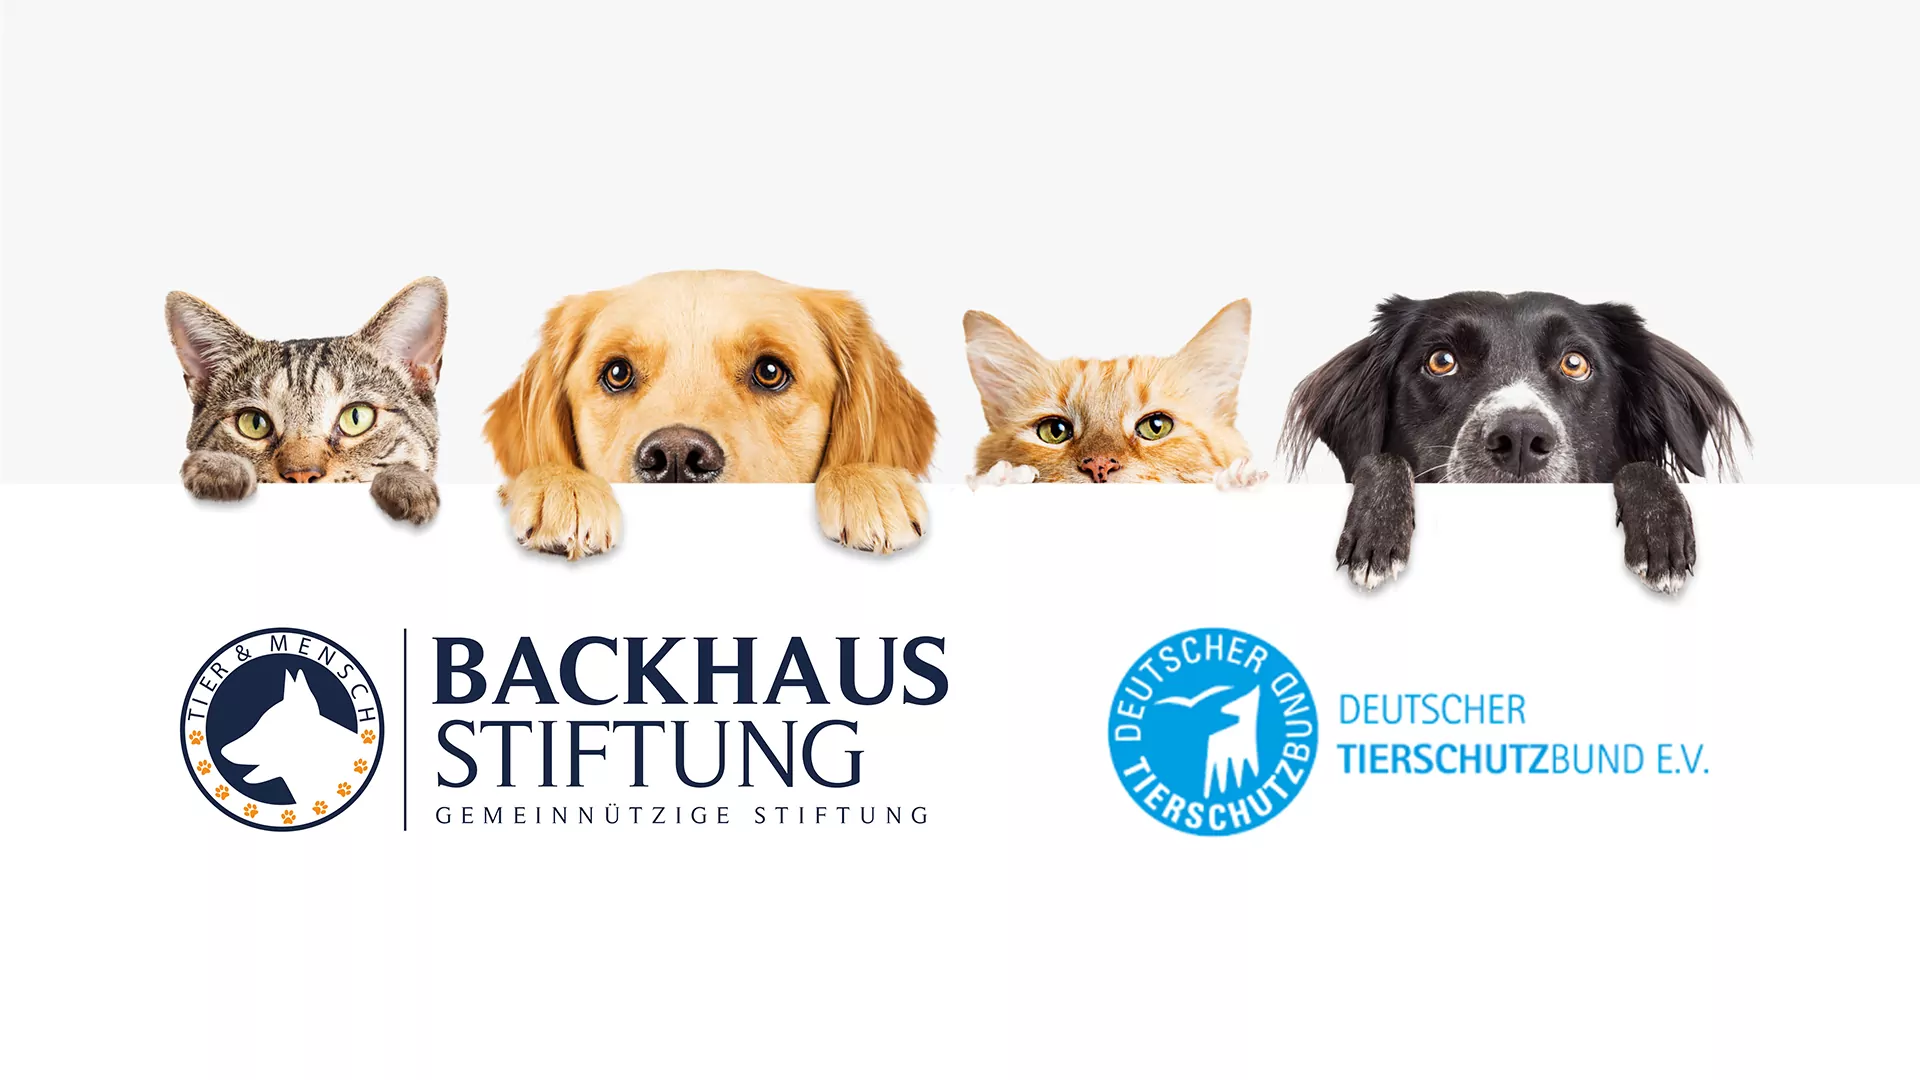 Backhaus Stiftung fördert Deutschen Tierschutzbund